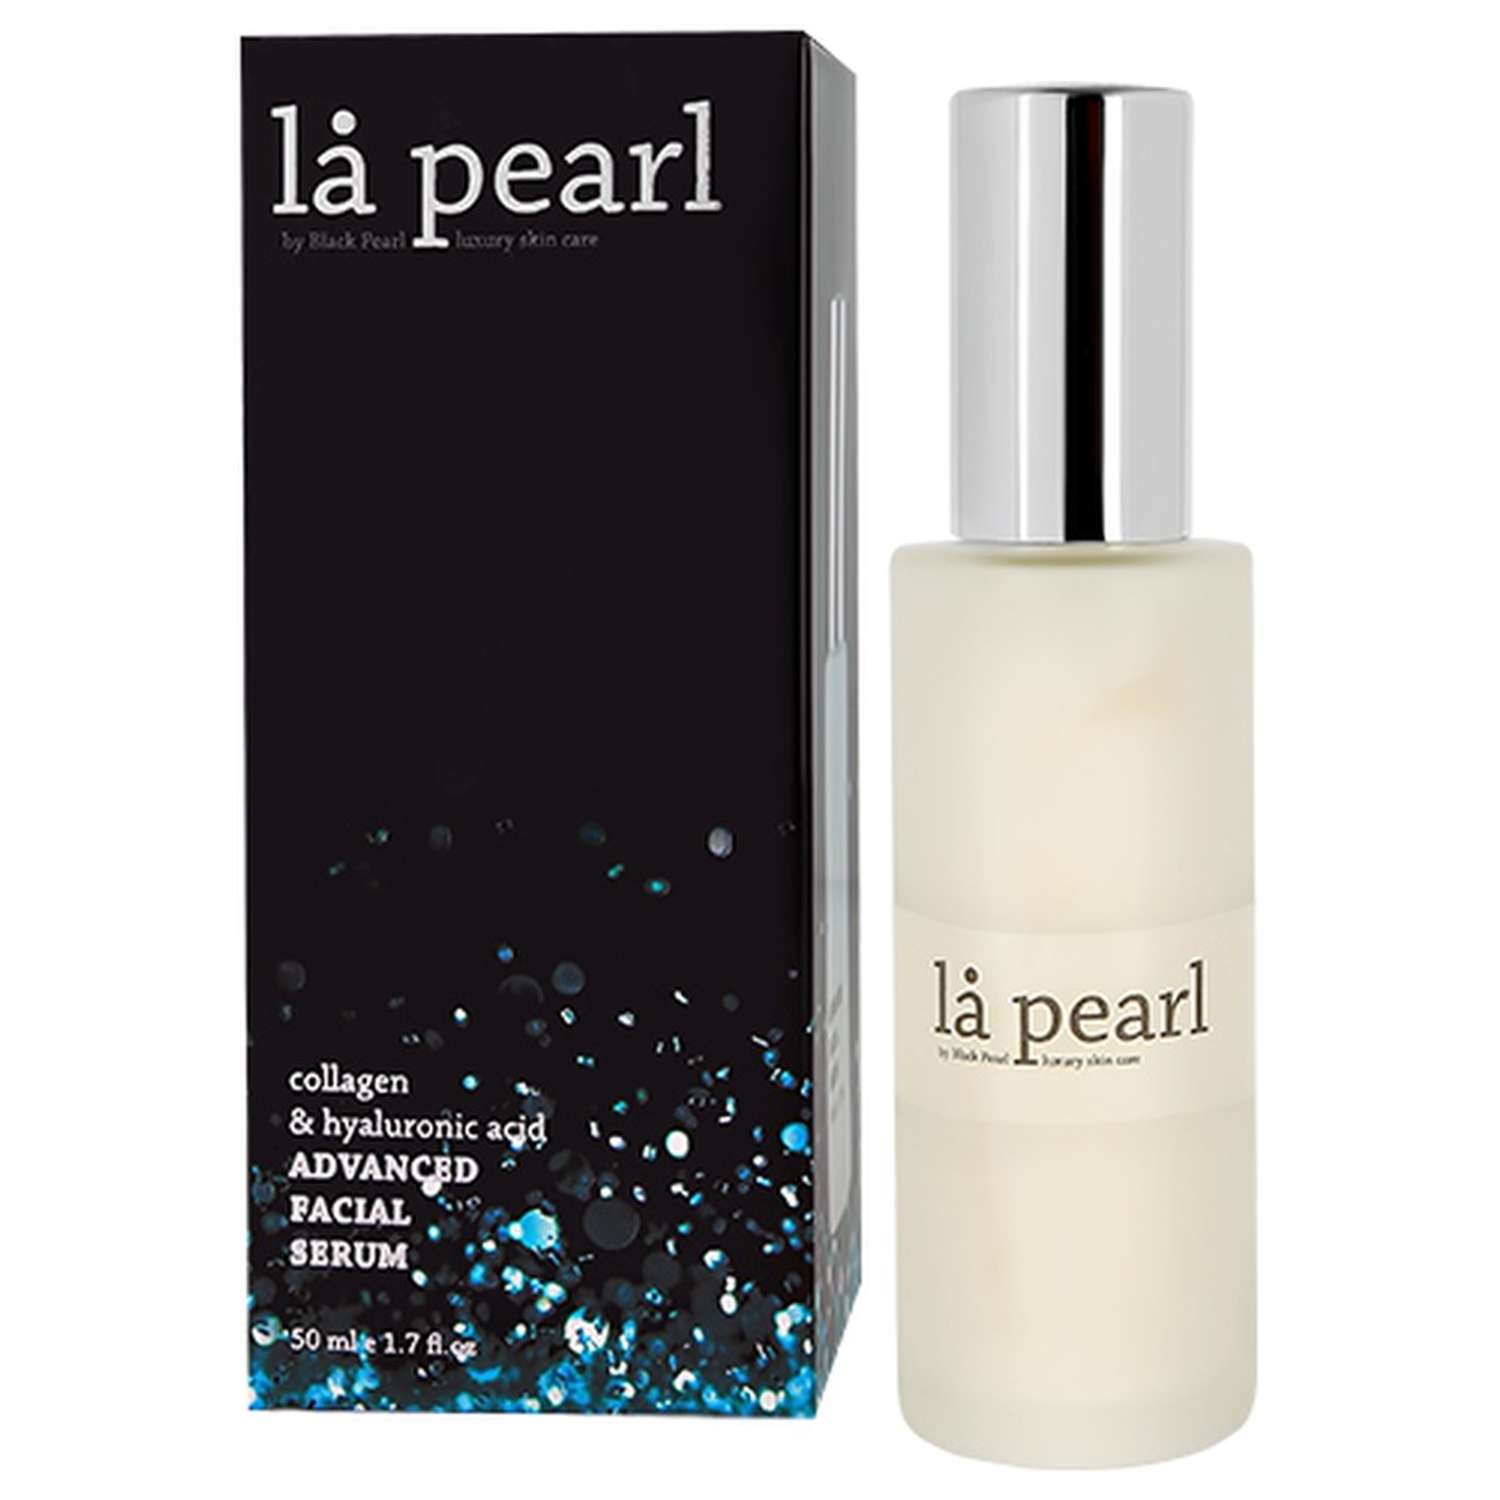 Сыворотка для лица Sea of Spa La pearl с коллагеном и гиалуроновой кислотой 50 мл - фото 3